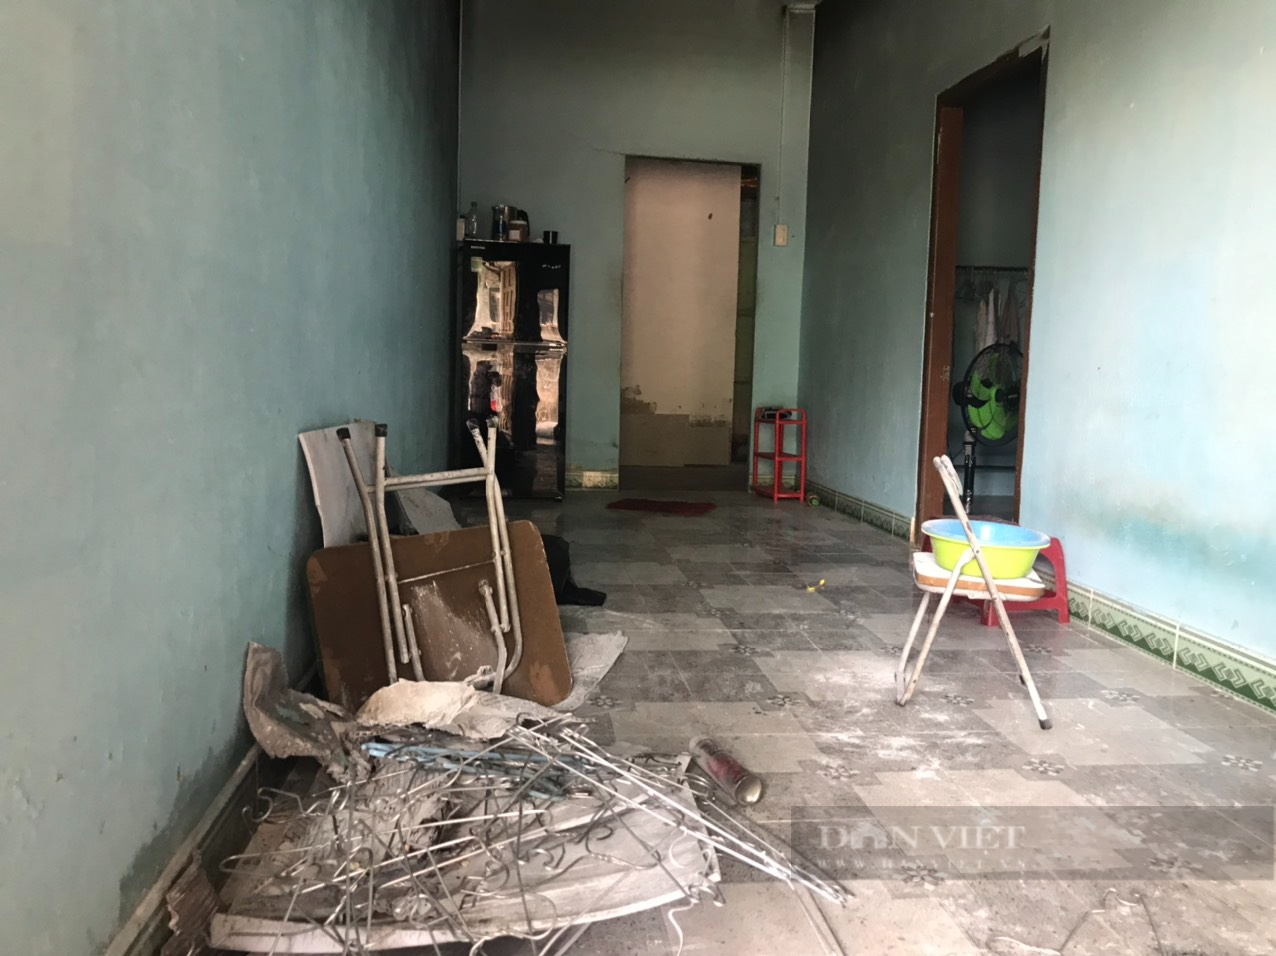  Hiện trường vụ cháy khiến cả hai vợ chồng trẻ tử vong ở Khánh Hòa - Ảnh 5.